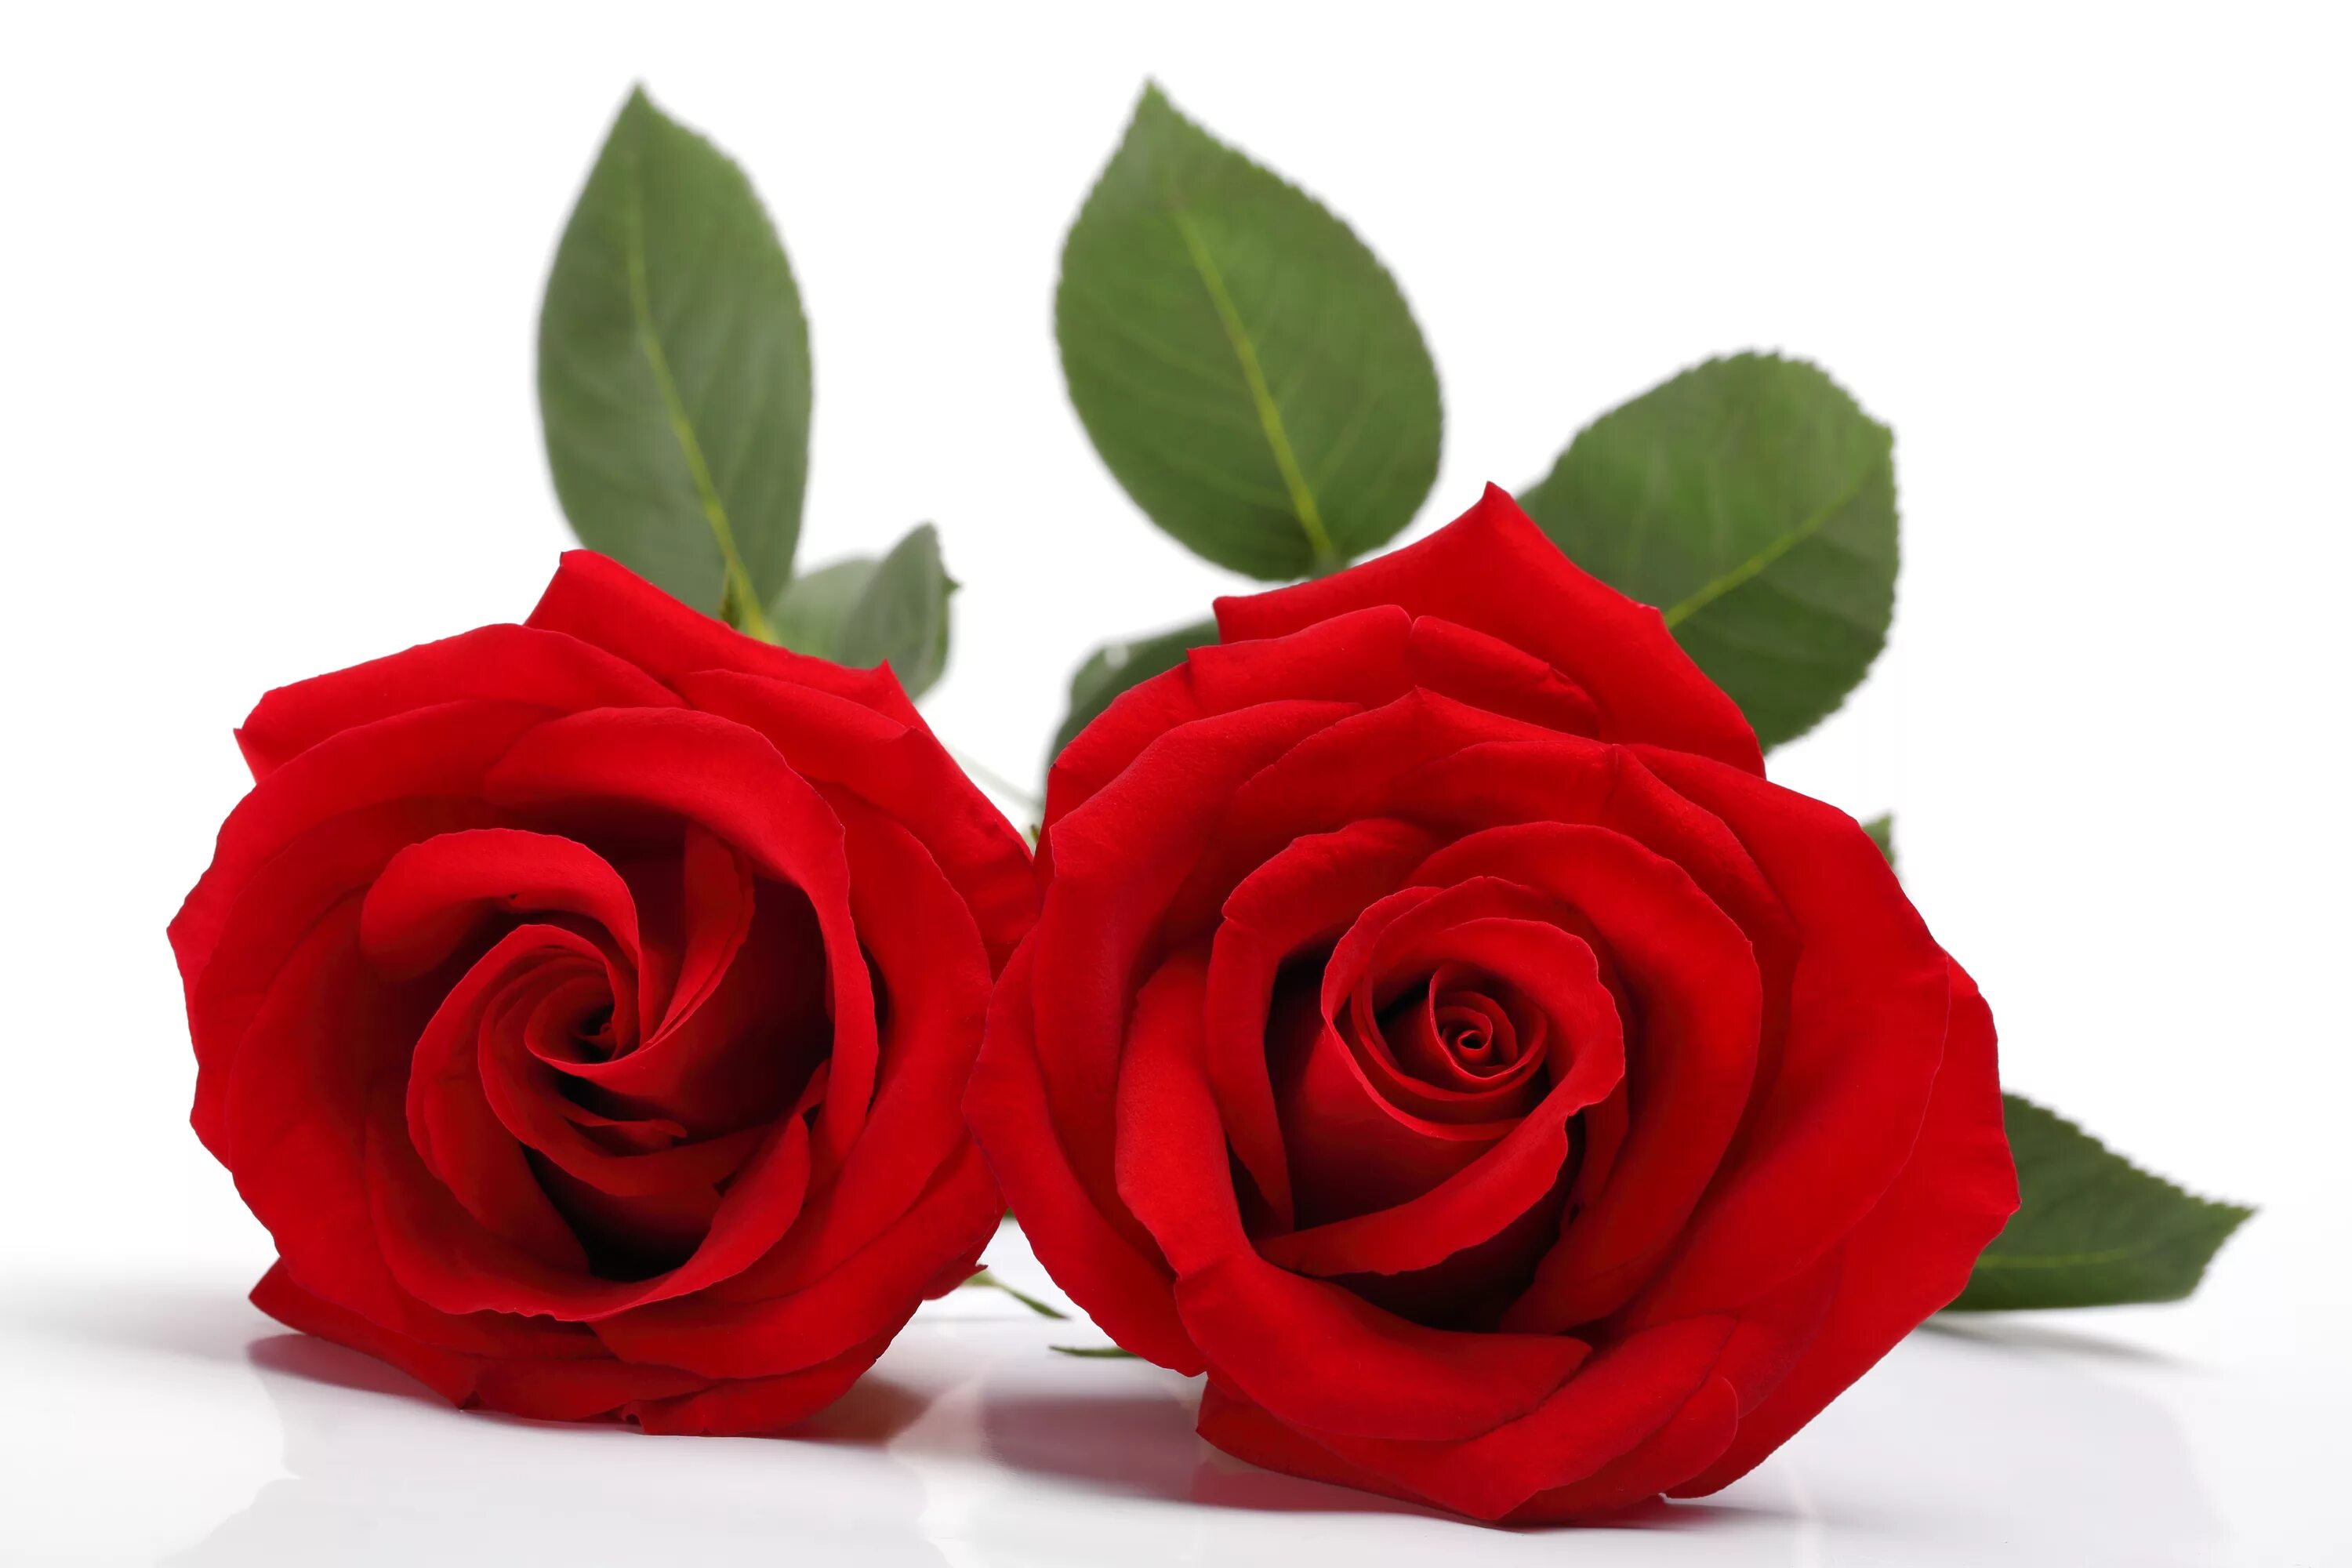 Цветы розы красные. Ред ред Роуз. Роза на белом фоне. Красные розы. Красные розы на белом фоне.